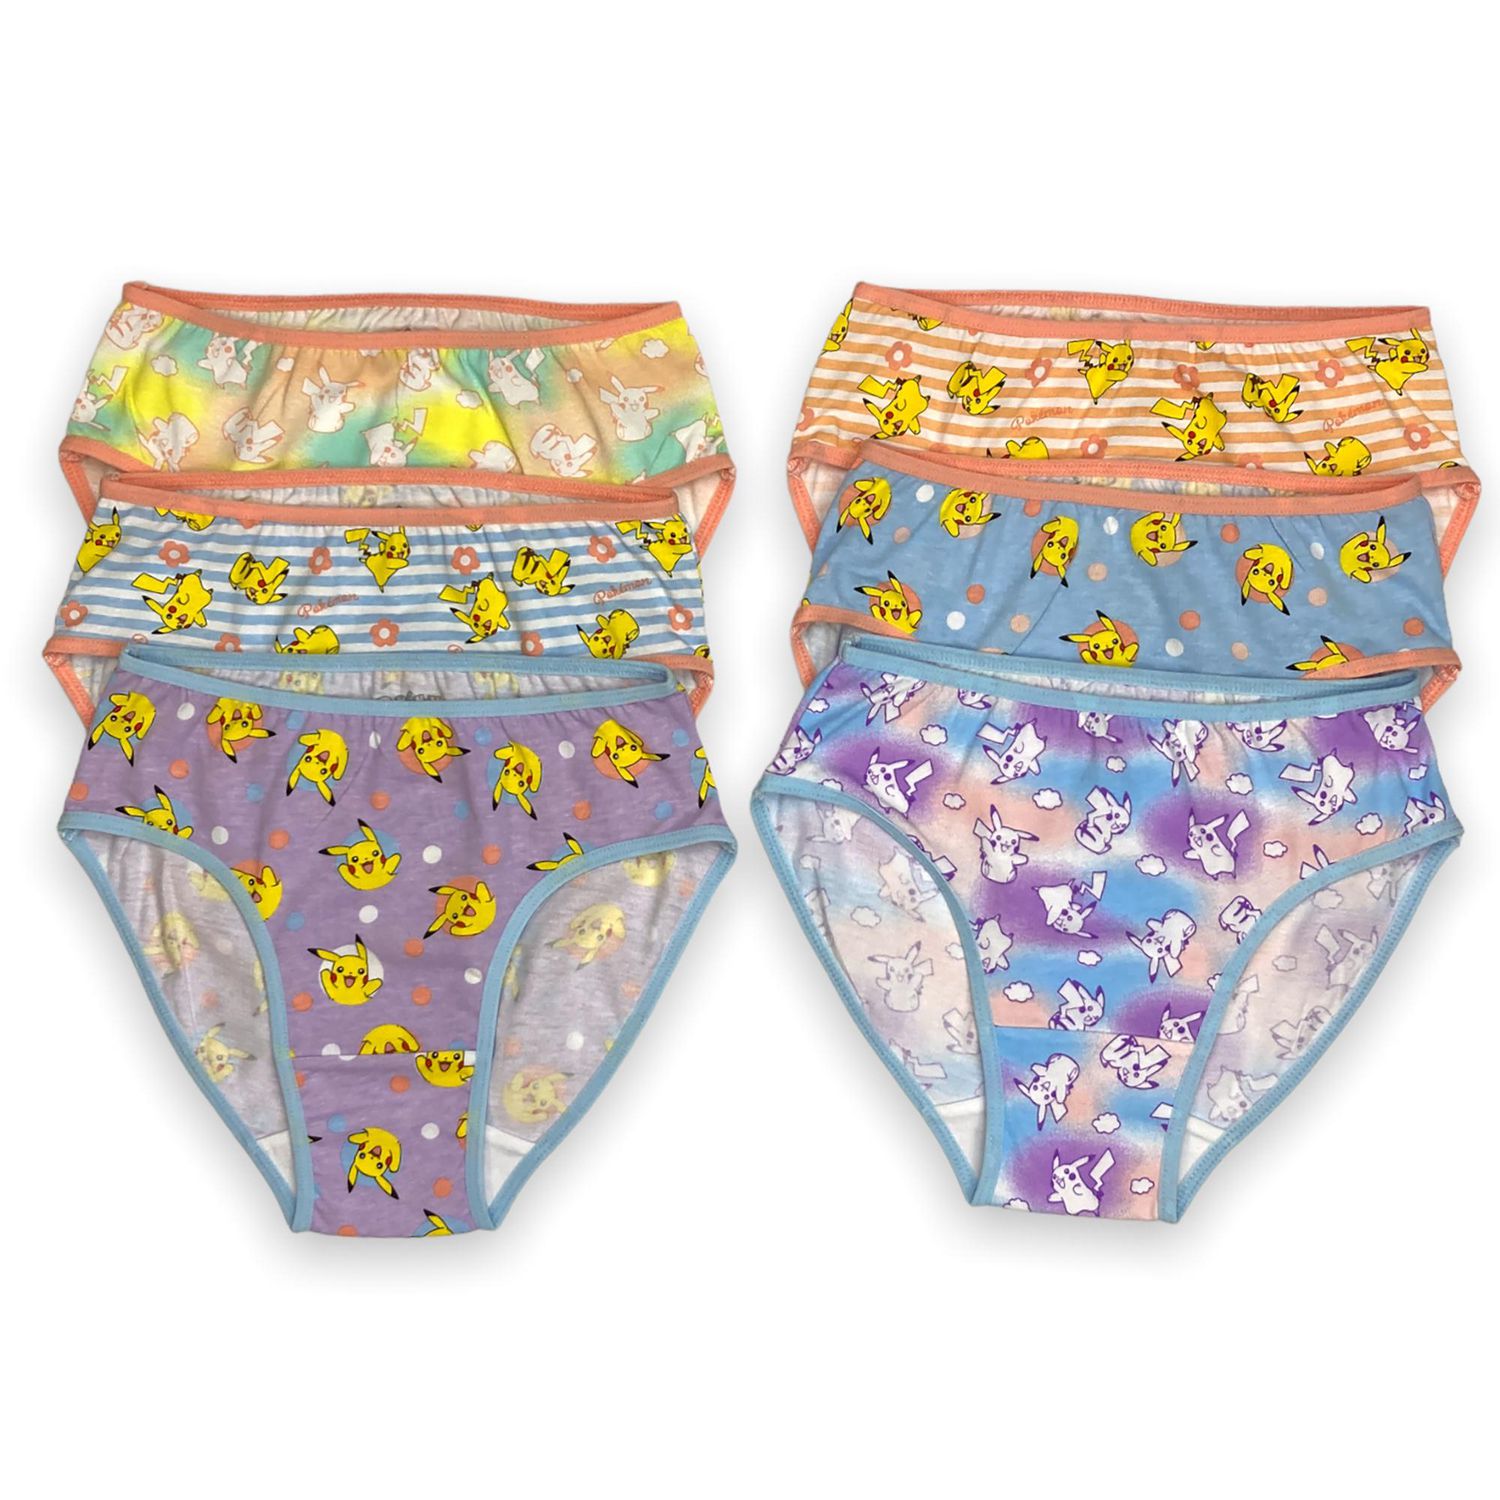 Carter's Child of Mine Girls' Underwear - Unicorn, 4-12